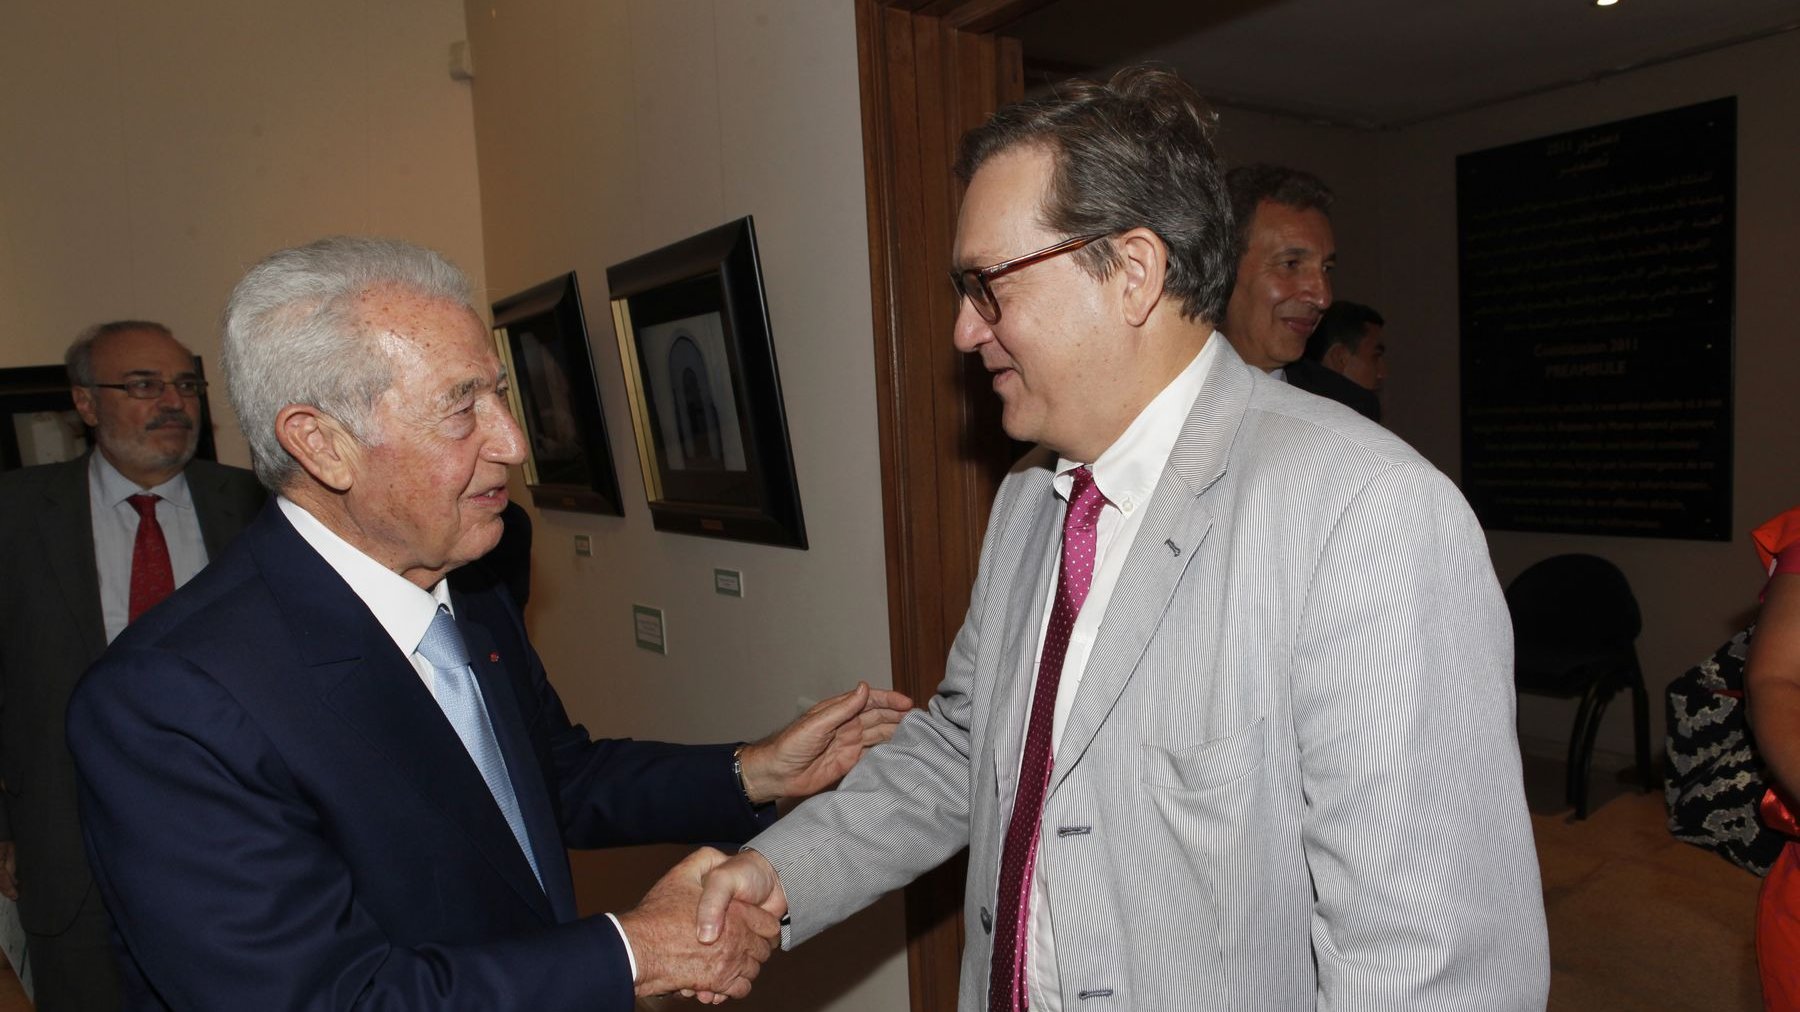 Jacques Toledano, Président du musée et Gilles Favret, Consul général de France, ont eu plaisir à se retrouver dans le cadre de cet événement. 
